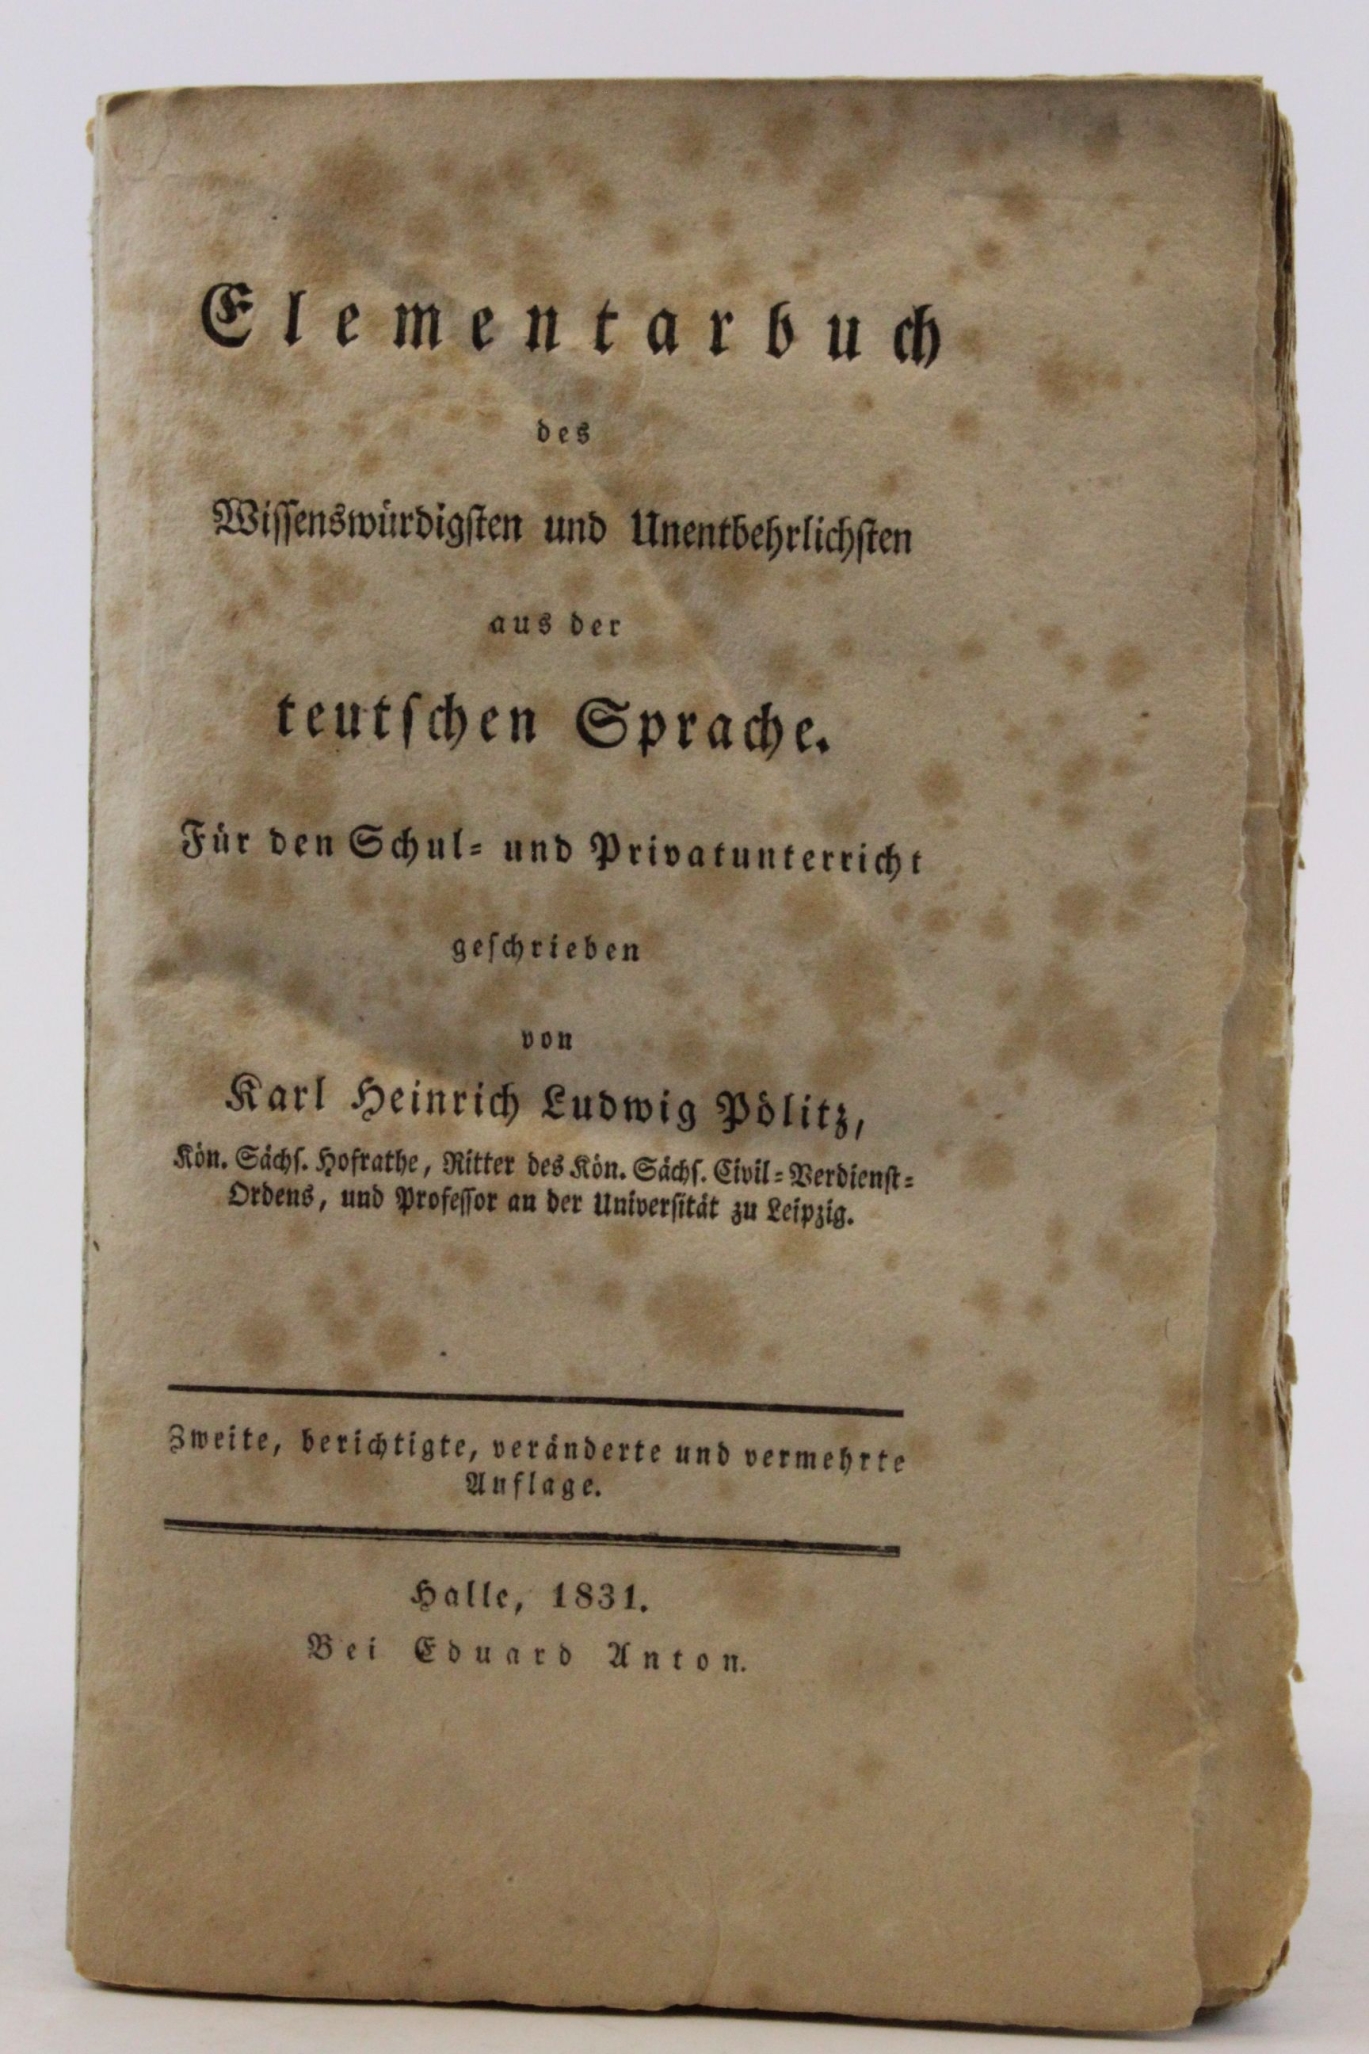 Pölitz, Karl Heinrich Ludwig: Elementarbuch des Wissenswürdigsten und Unentbehrlichen aus der teutschen Sprache Für den Schul- und Privatunterricht